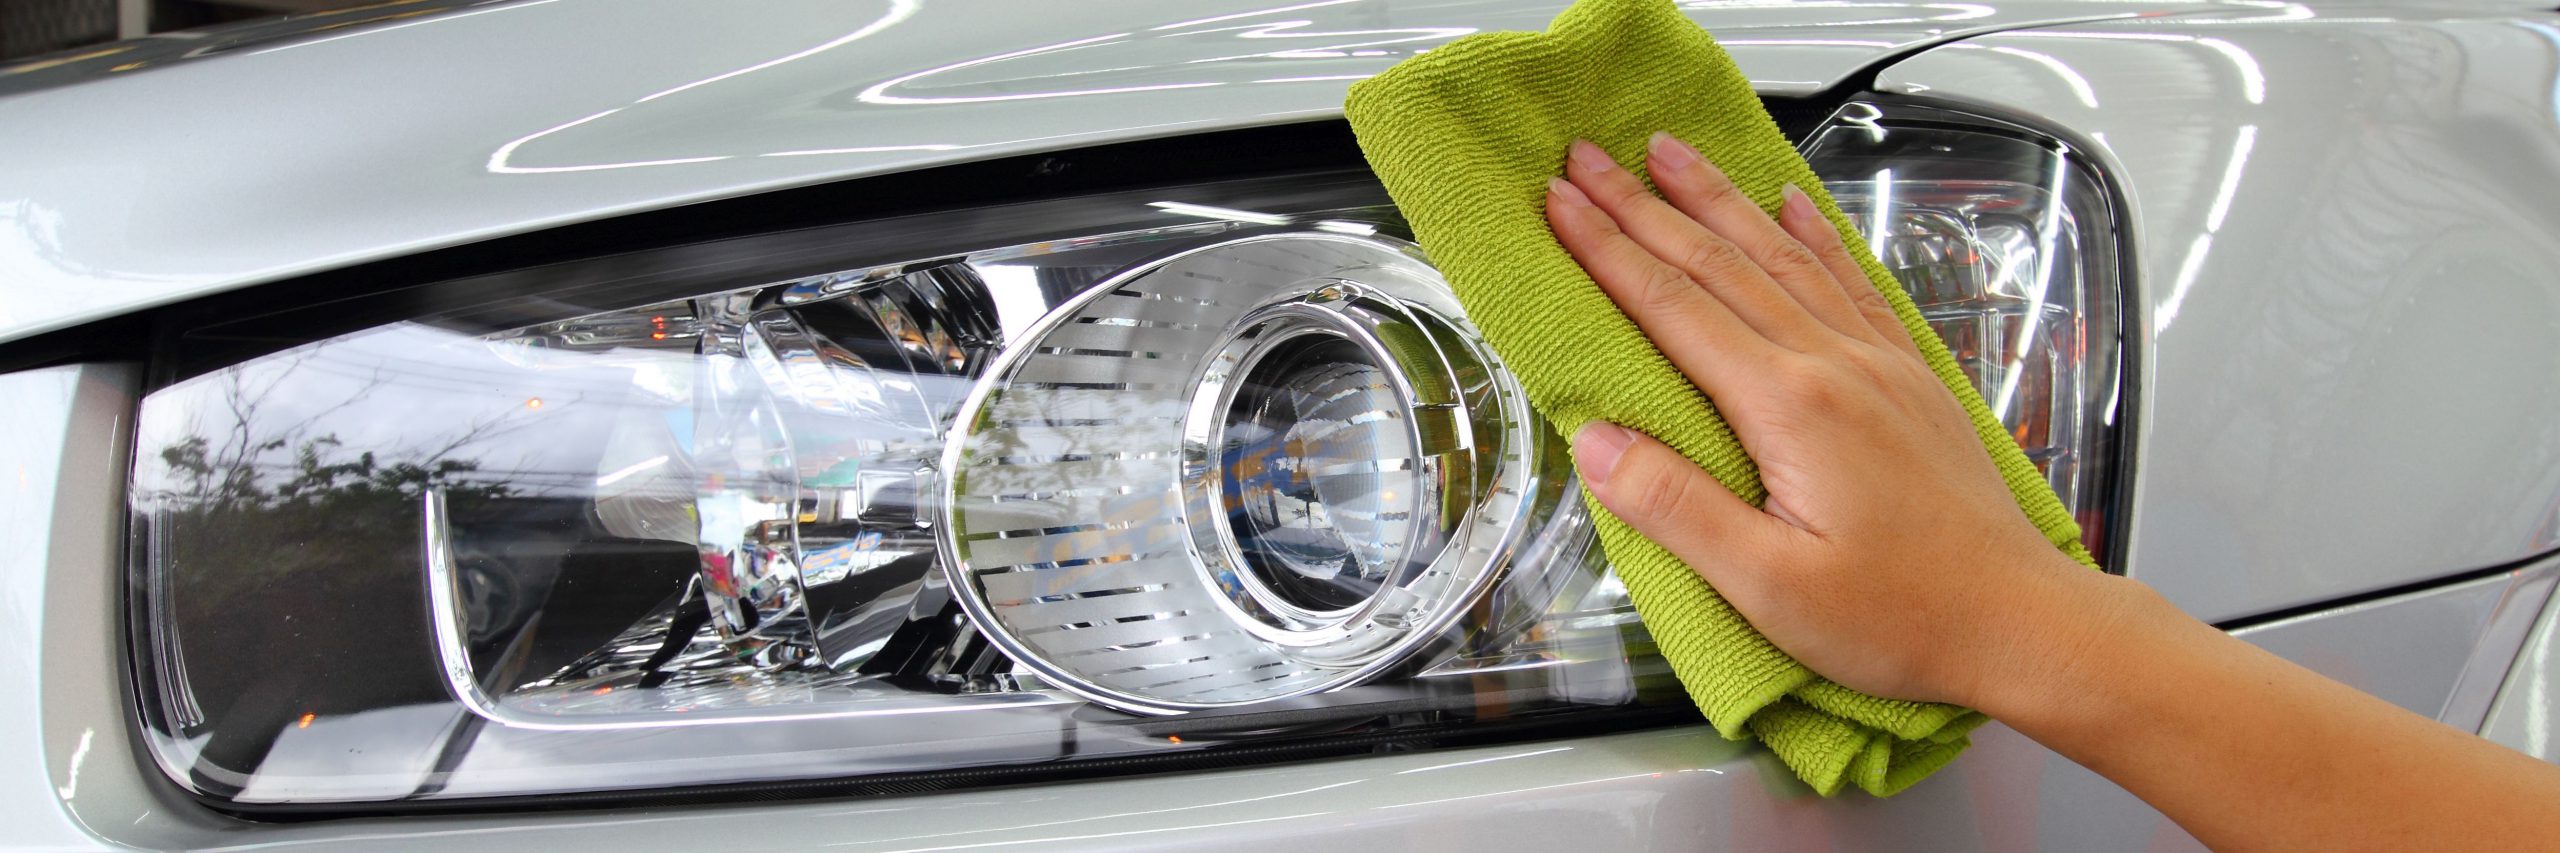 Cómo pulir los faros del coche de forma casera